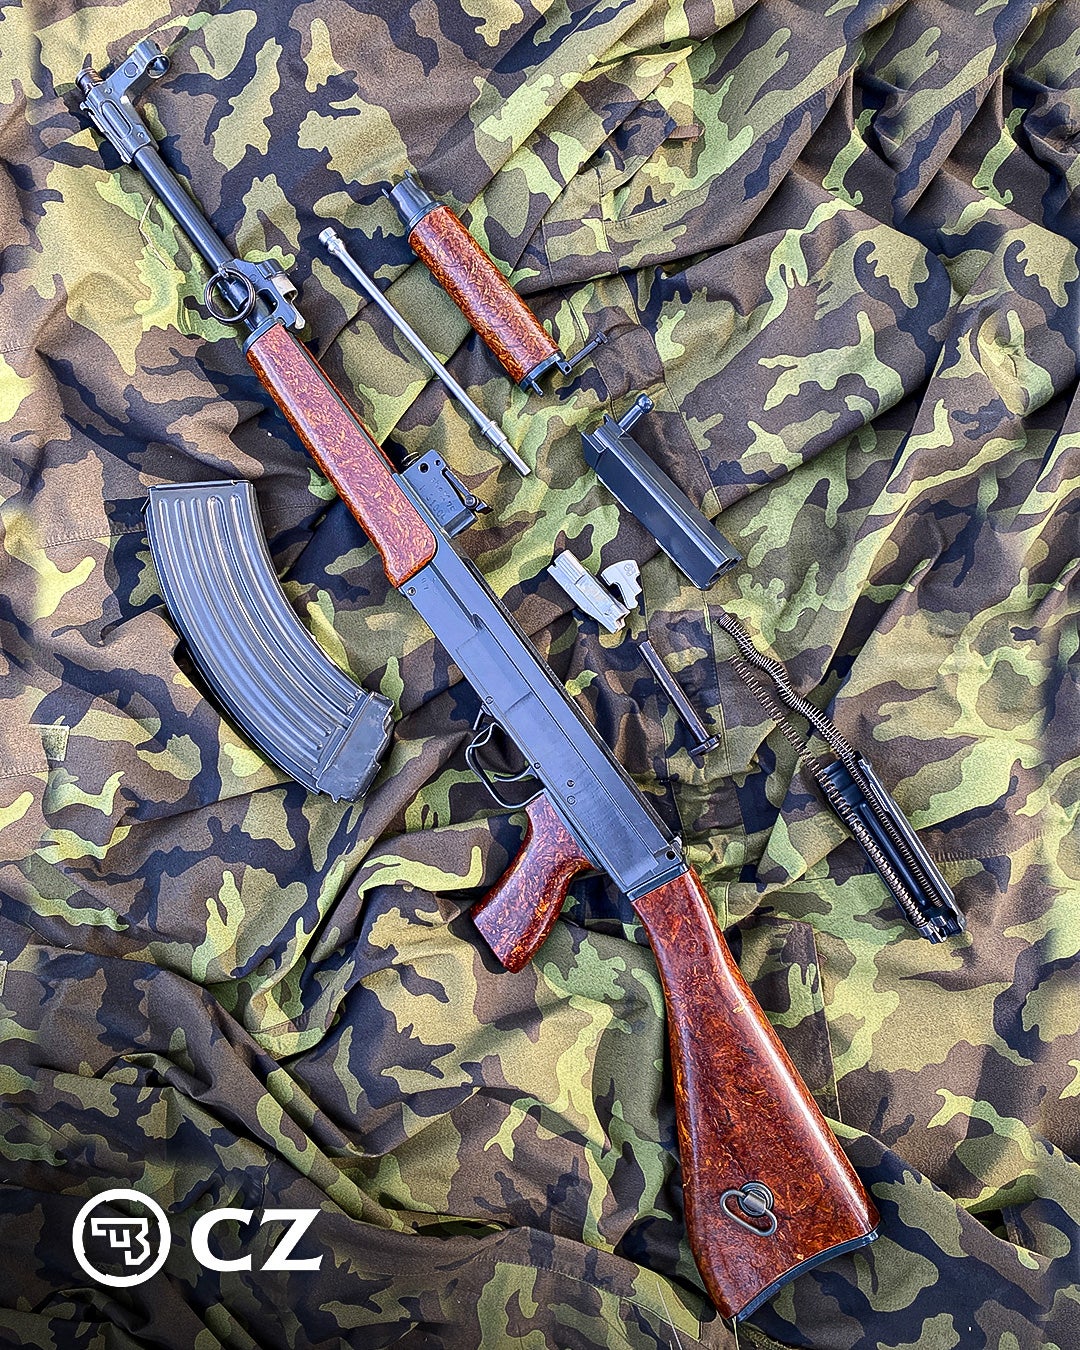 POTD: CZ Firearms - The Vz. 58